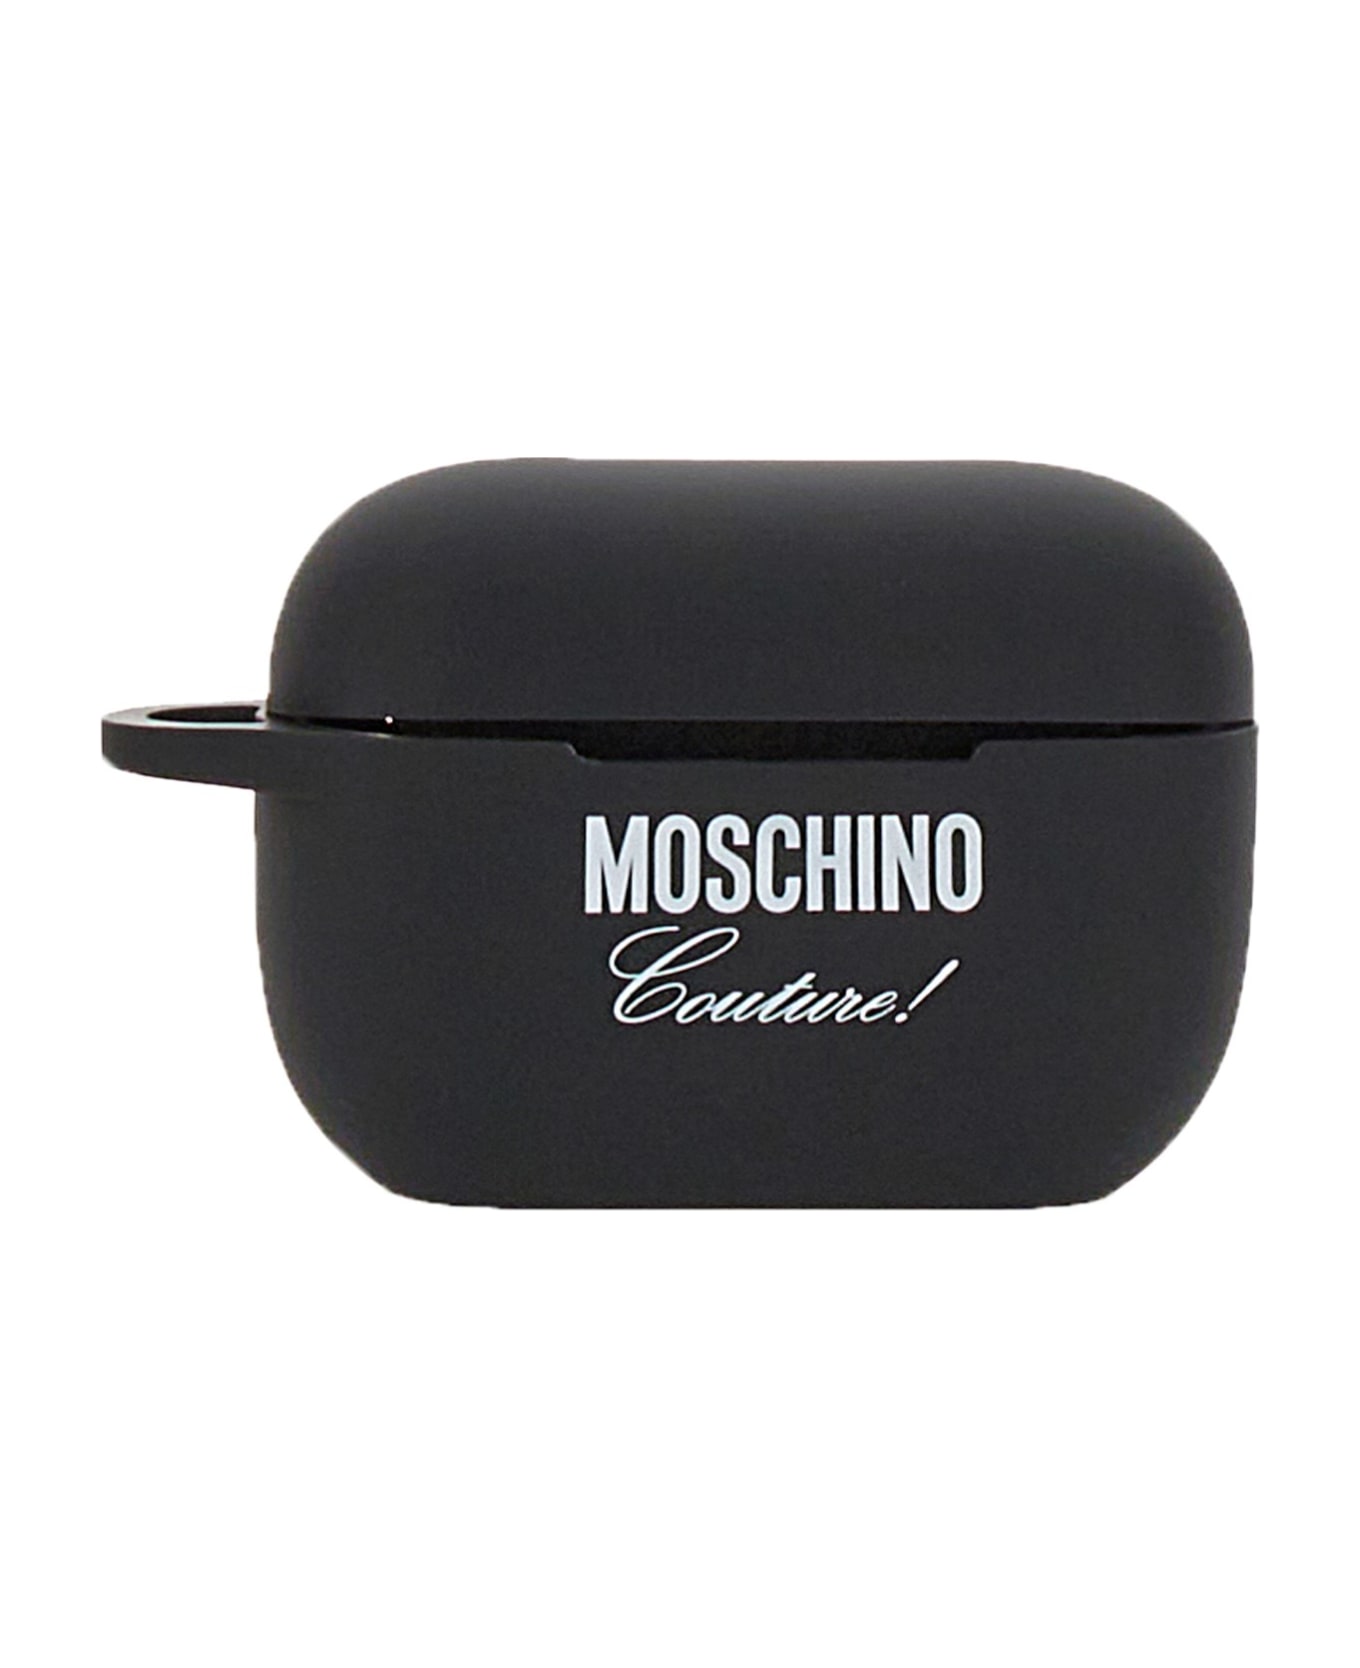 Moschino Case For Airpod Pro - NERO